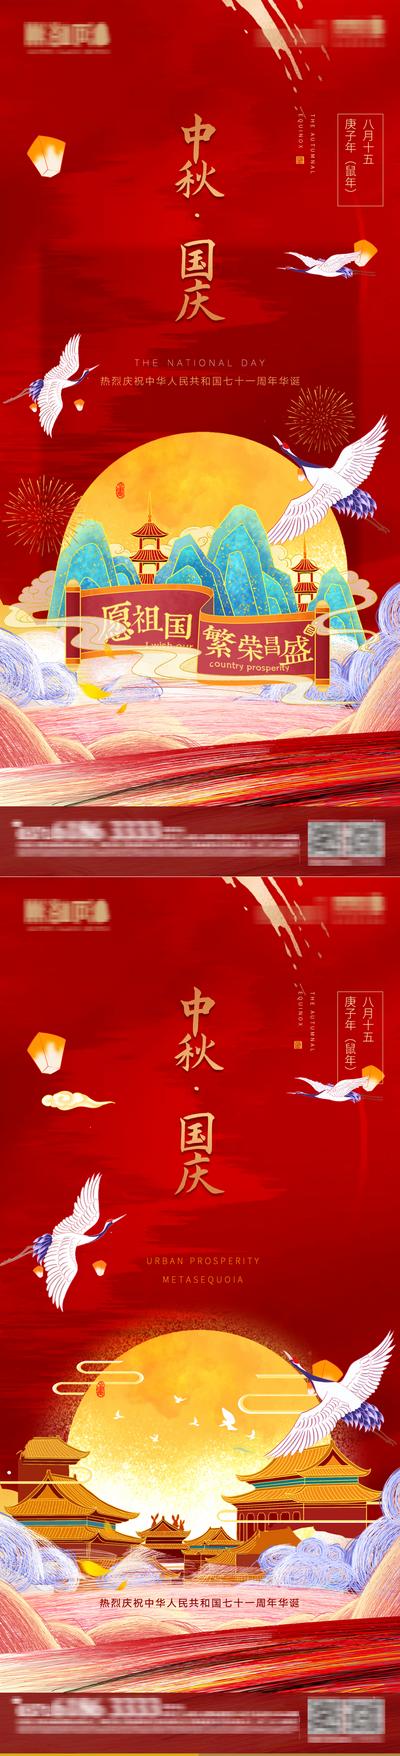 南门网 海报 房地产 中国传统节日 中秋节 公历节日 国庆节